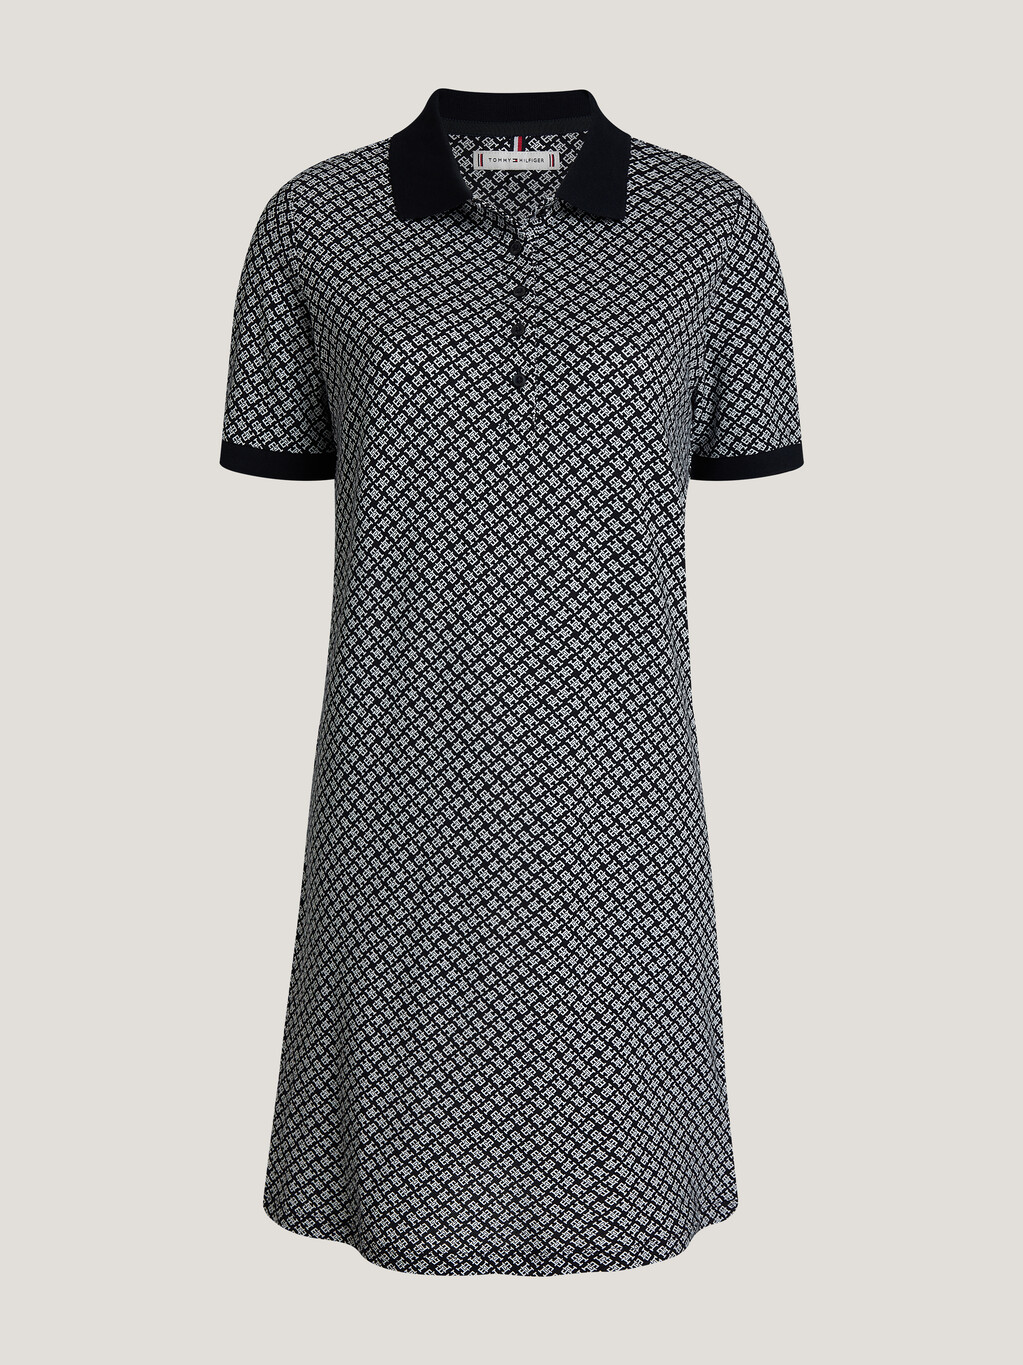 TH Monogram Polo Dress, Mini Scattered Amd/ Desert Sky, hi-res